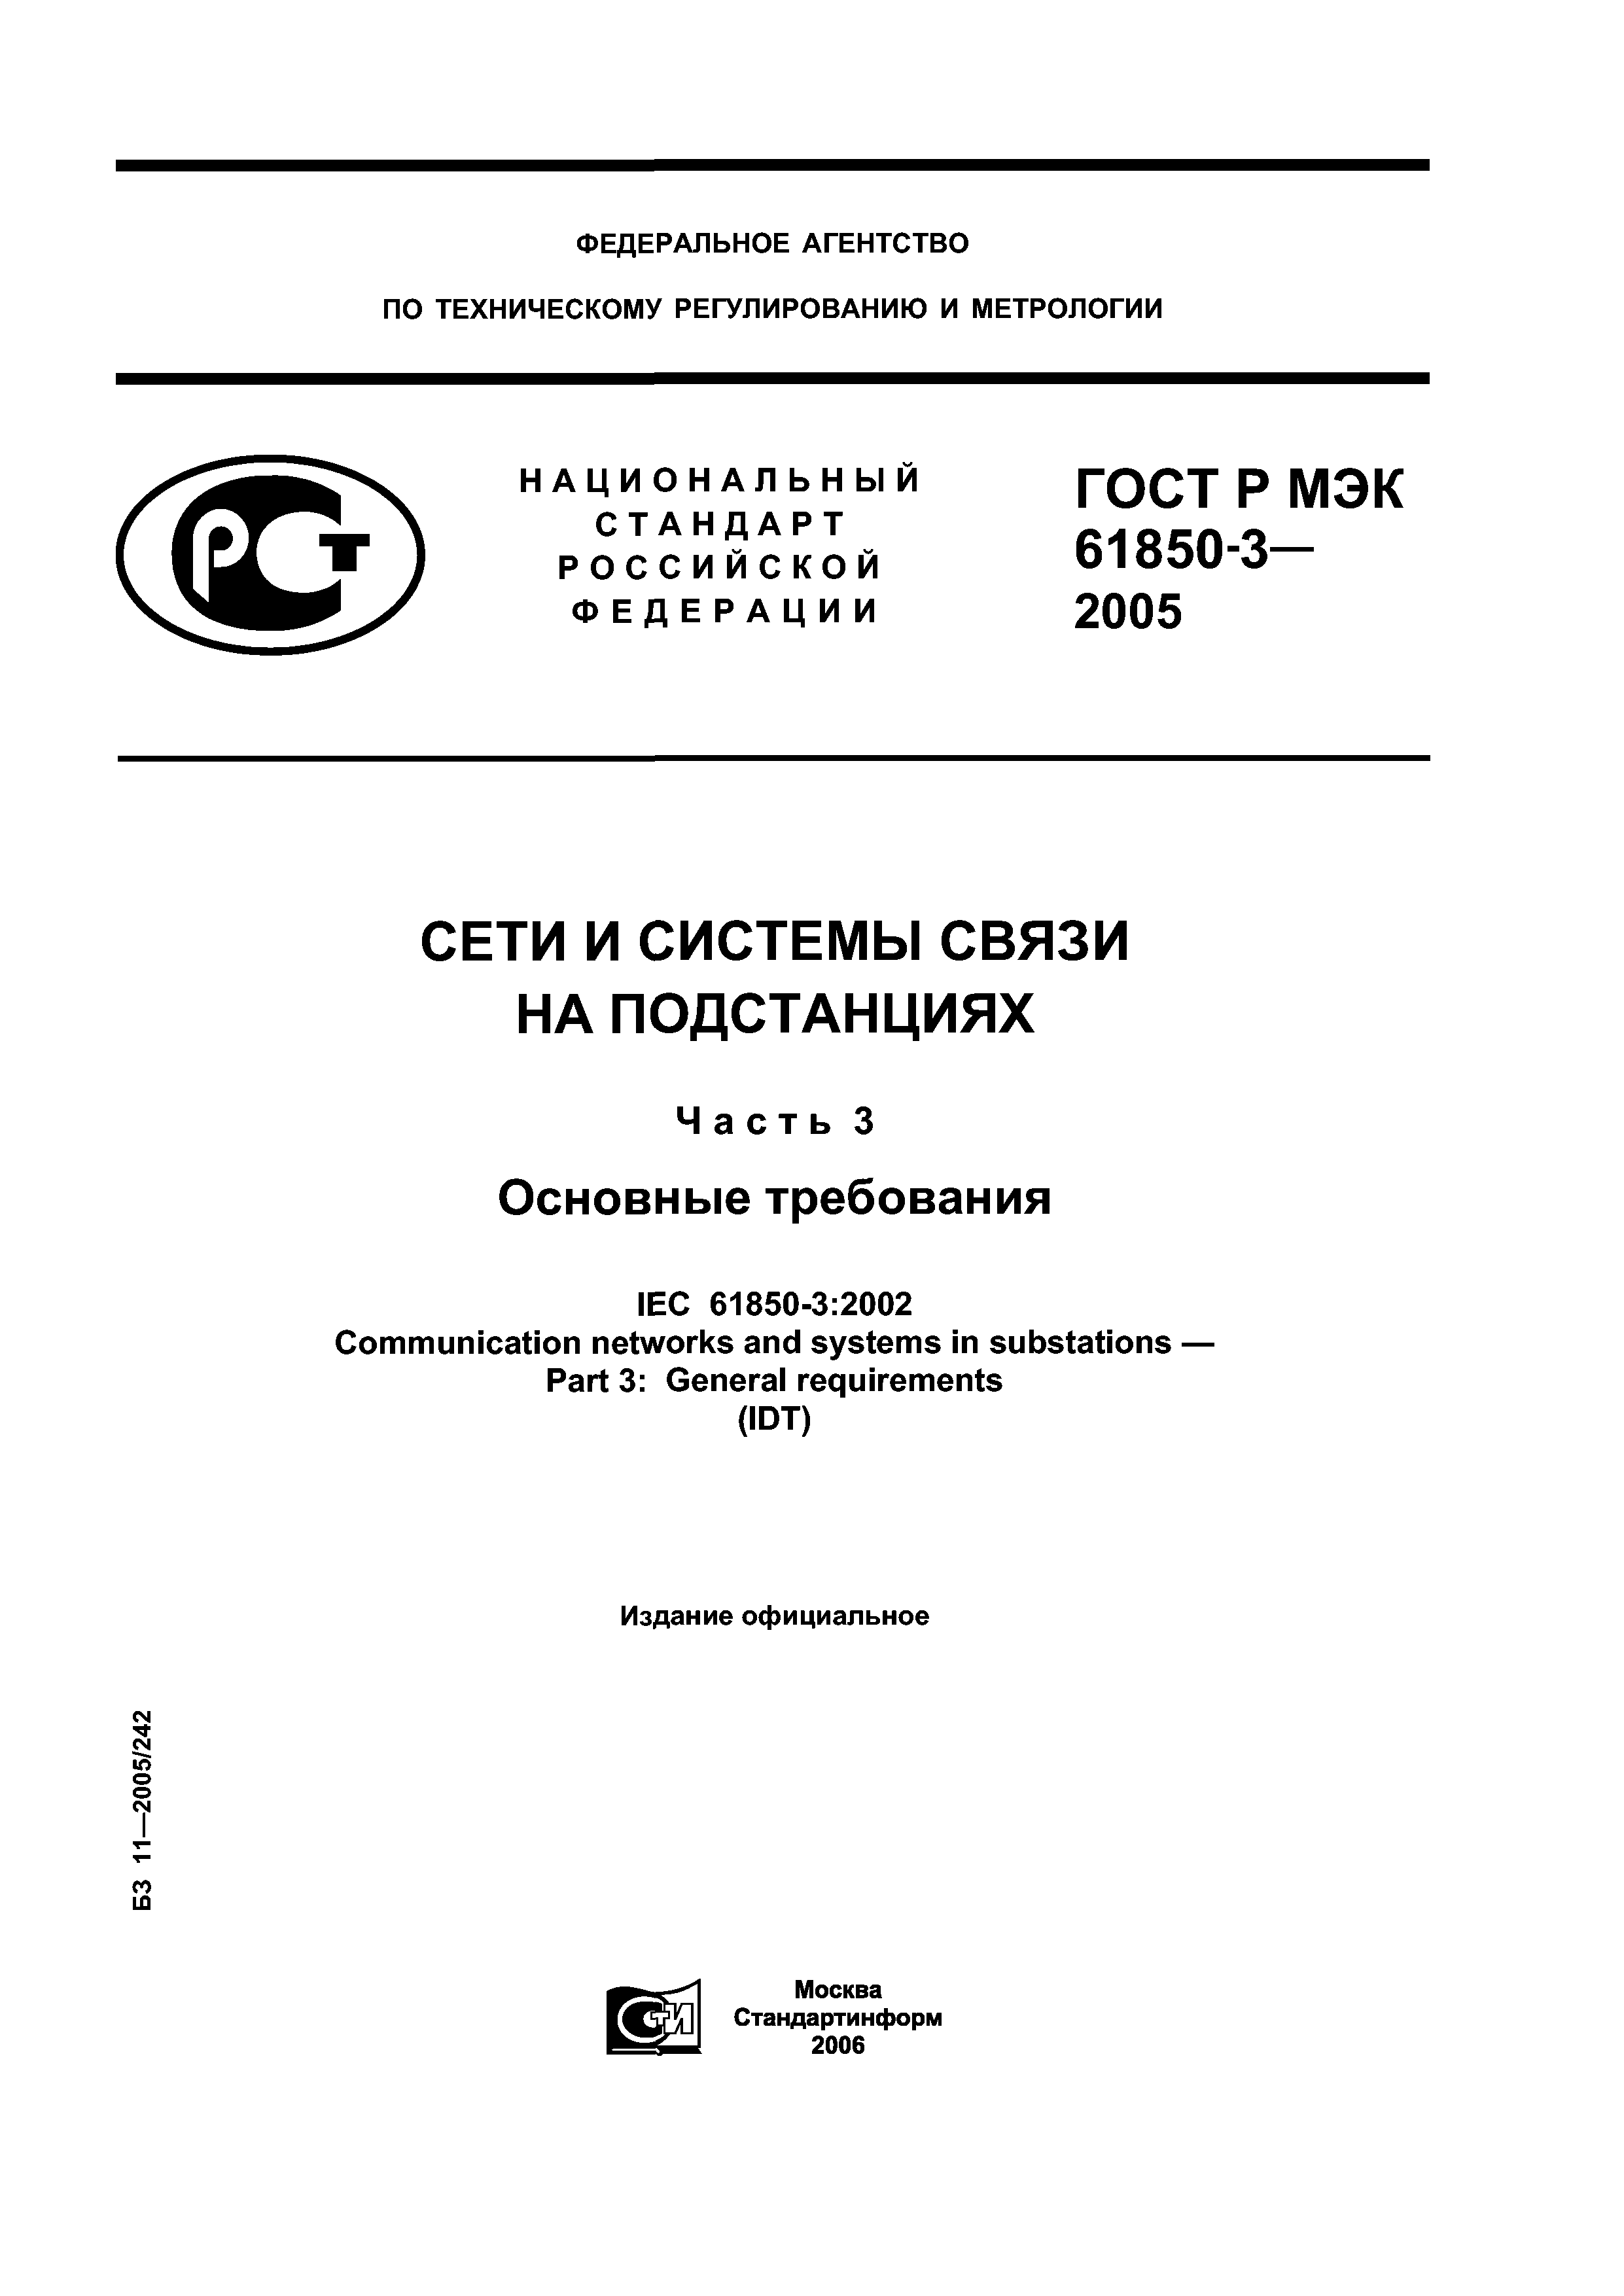 ГОСТ Р МЭК 61850-3-2005